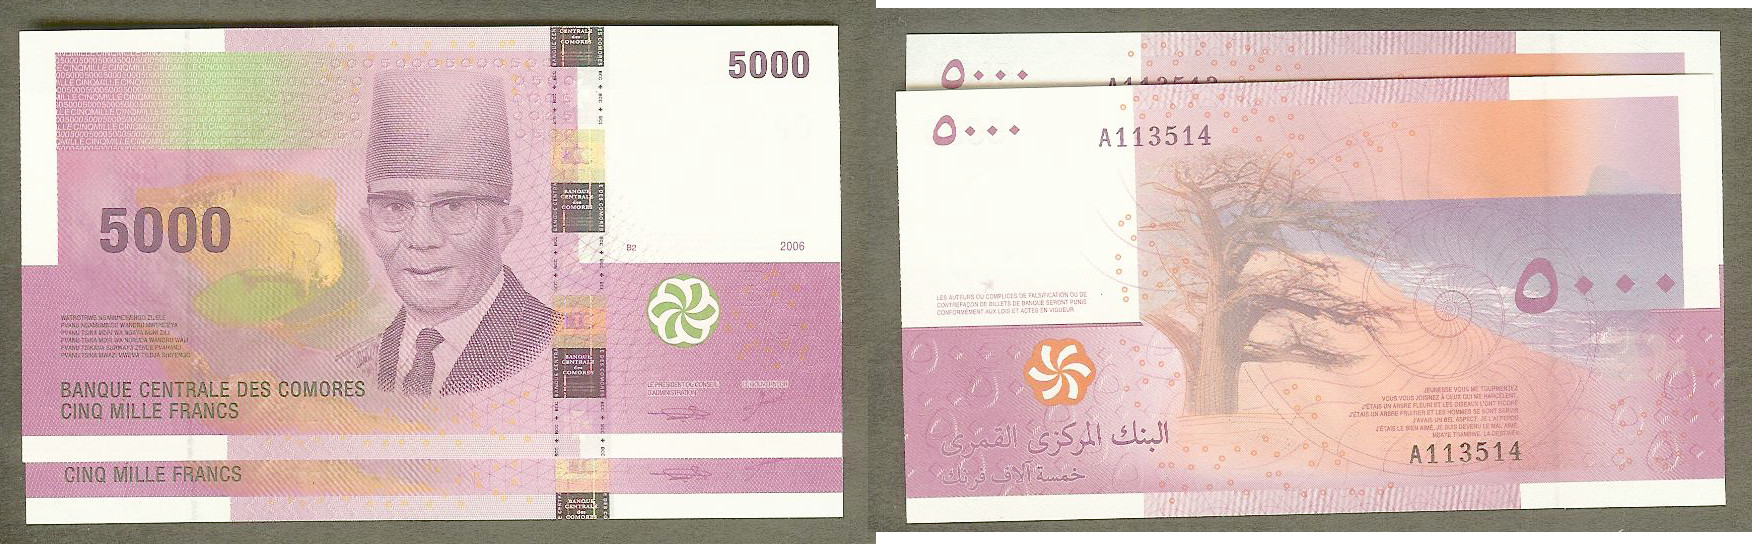 5000 Francs Banque Centrale des Comores 2006 2X NEUF